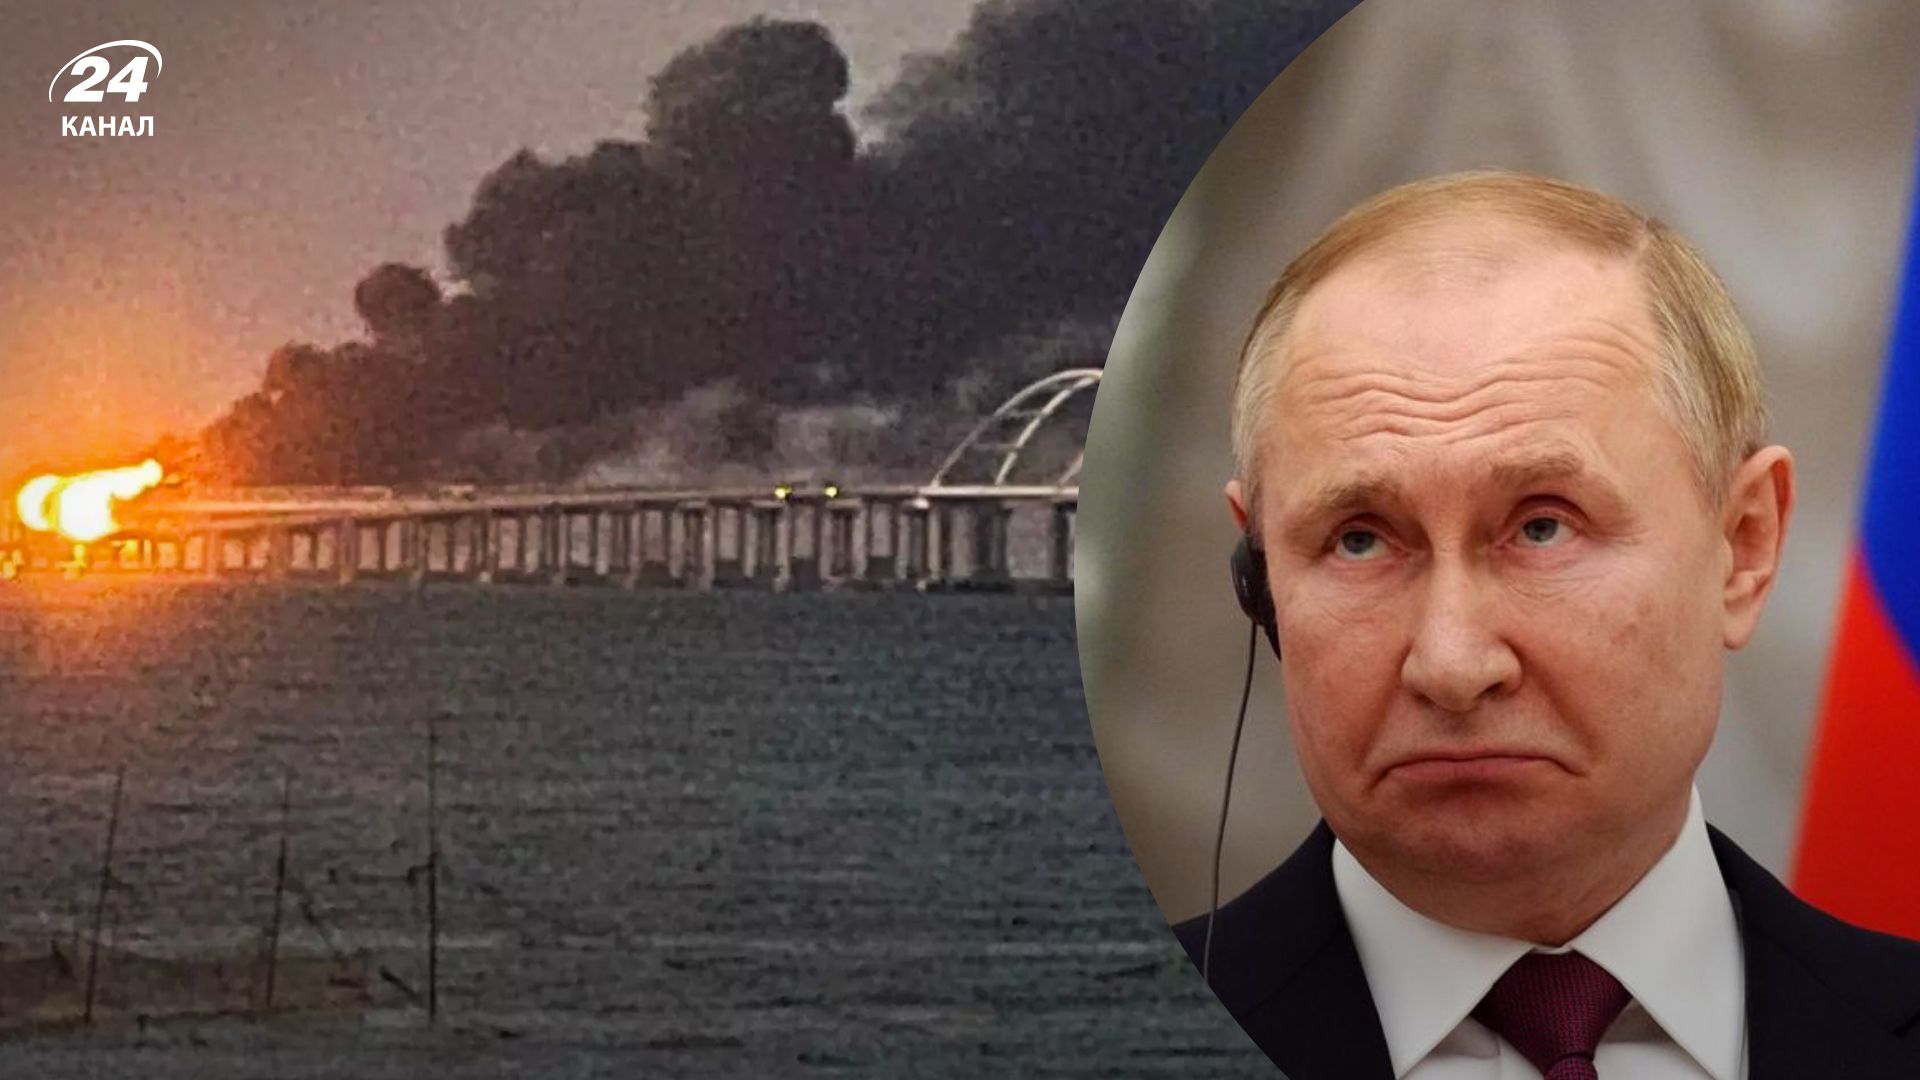 Крымский мост взорвали 08.10.2022 - перед каким выбором теперь будет стоять Путин